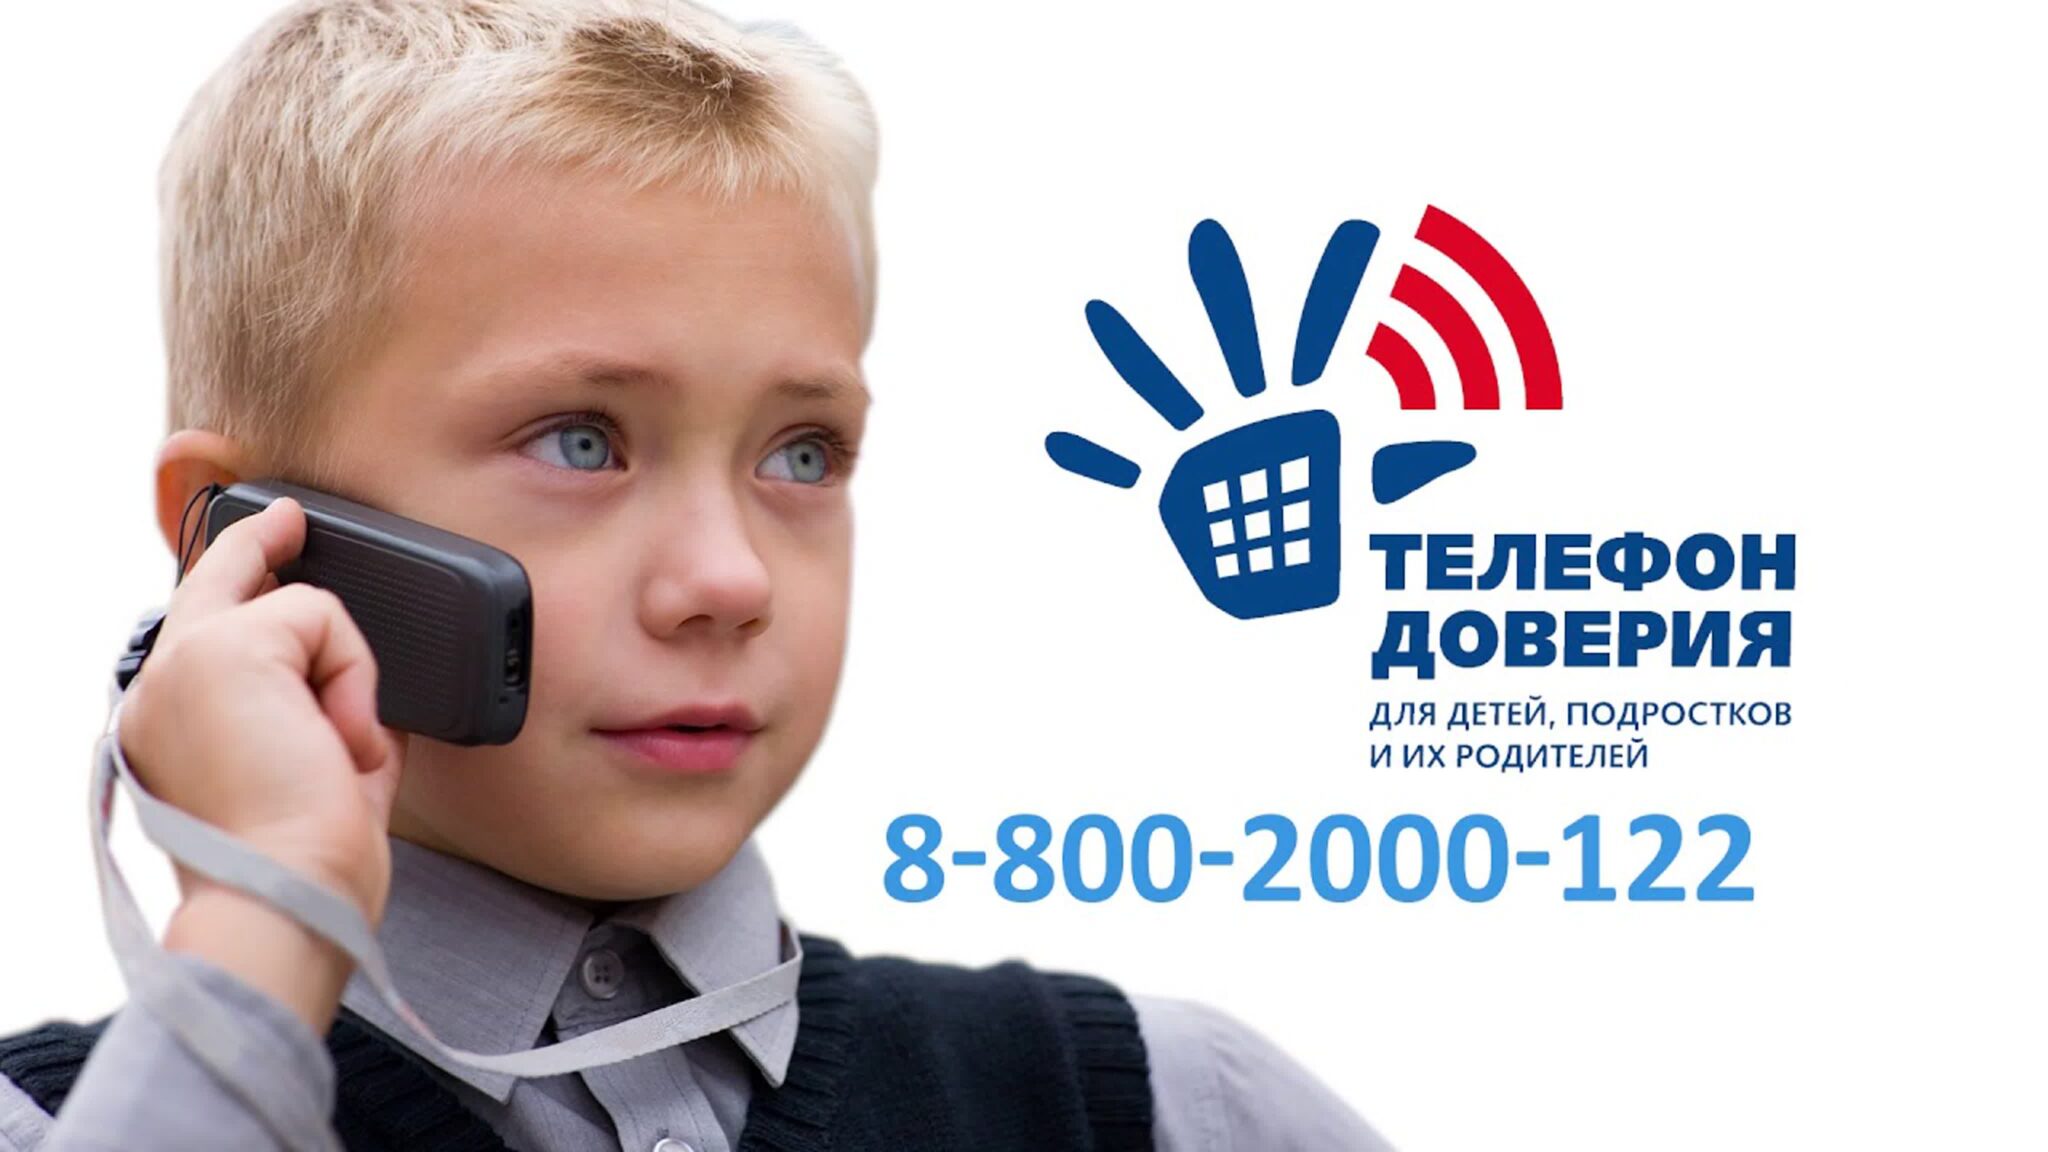 Телефоны доверия для детей, подростков и их родителей.